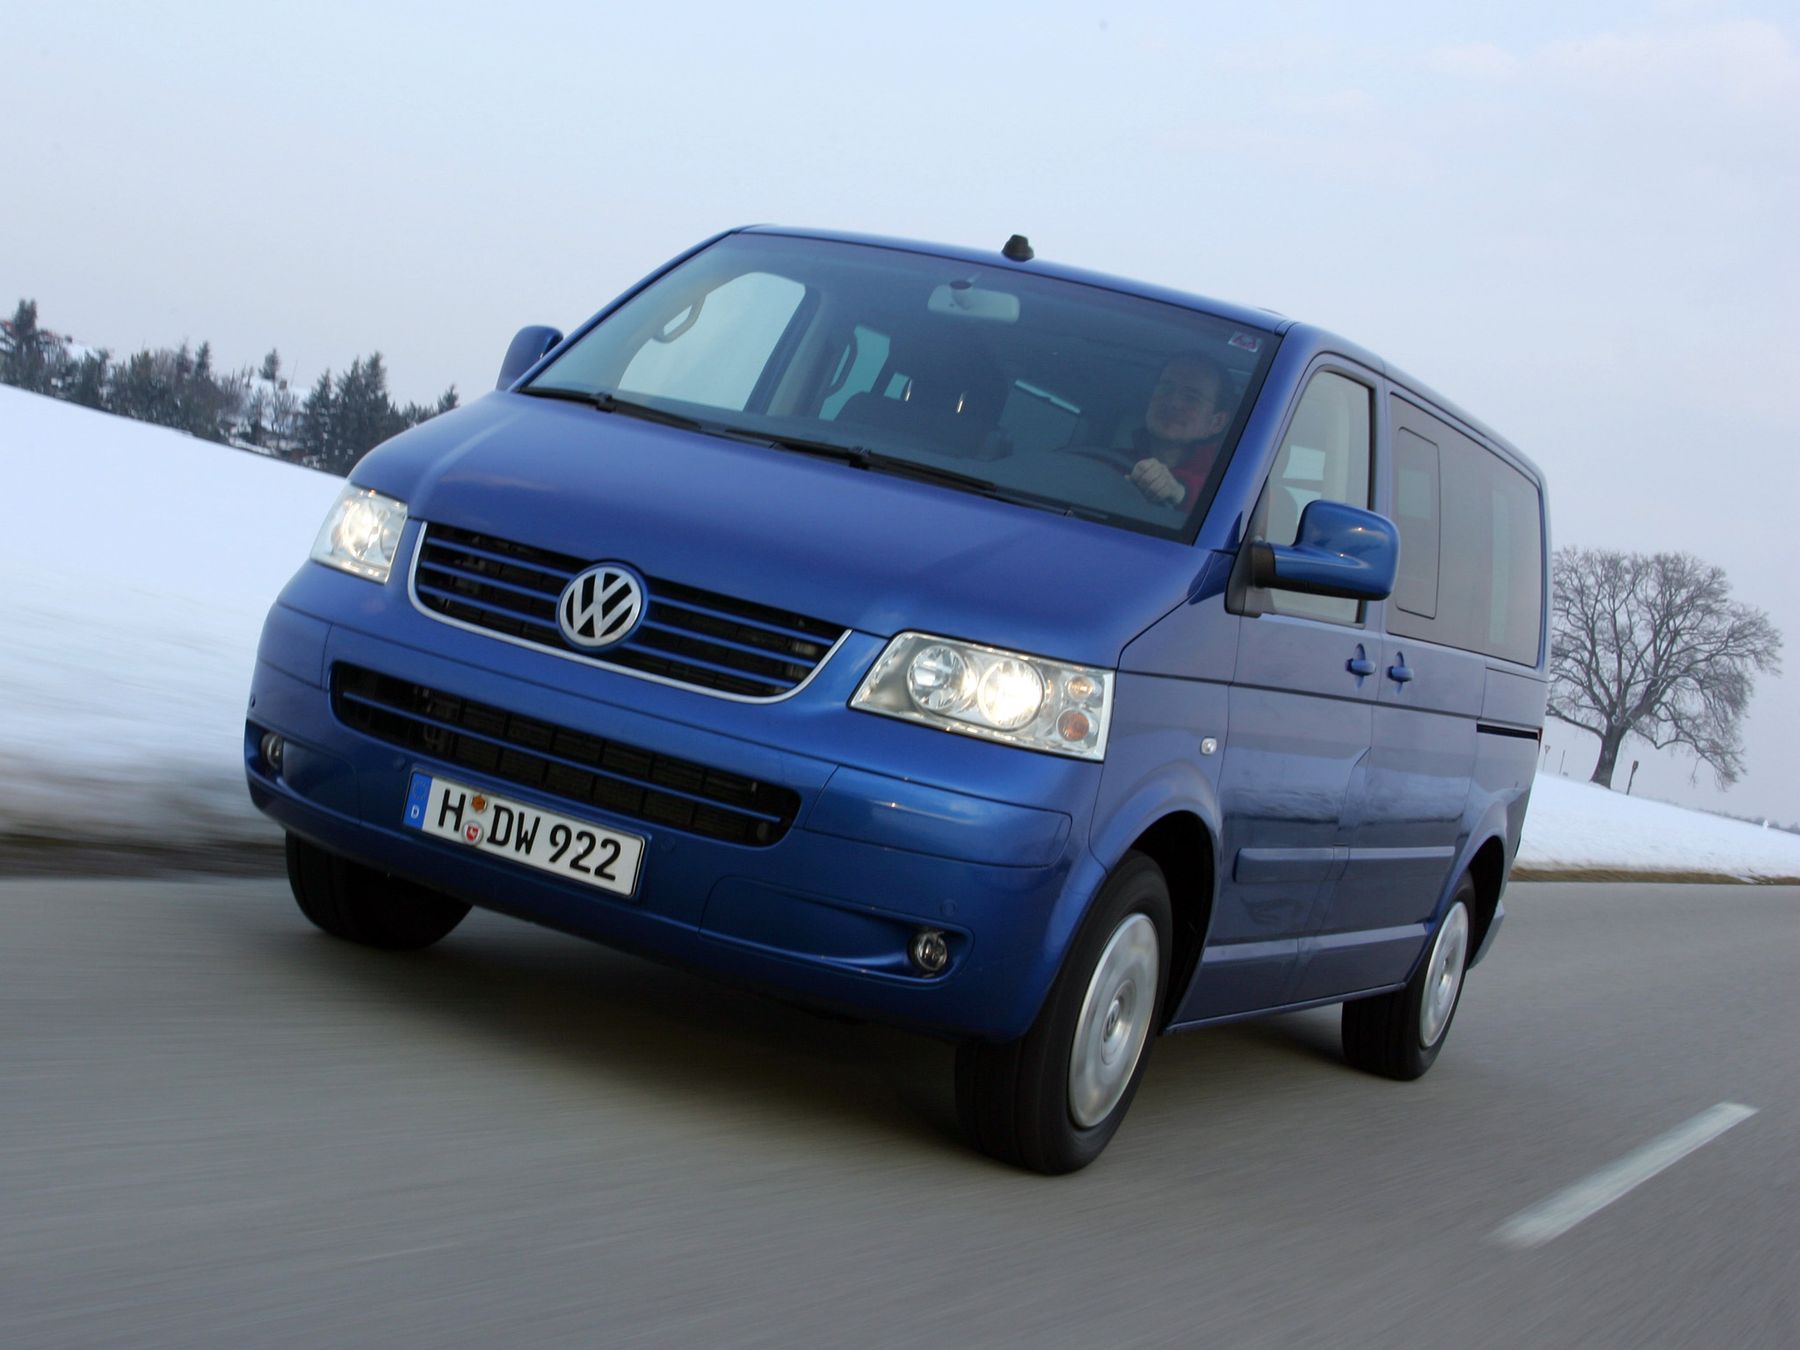 Volkswagen Transporter van dimensions (2003-2009), capacity